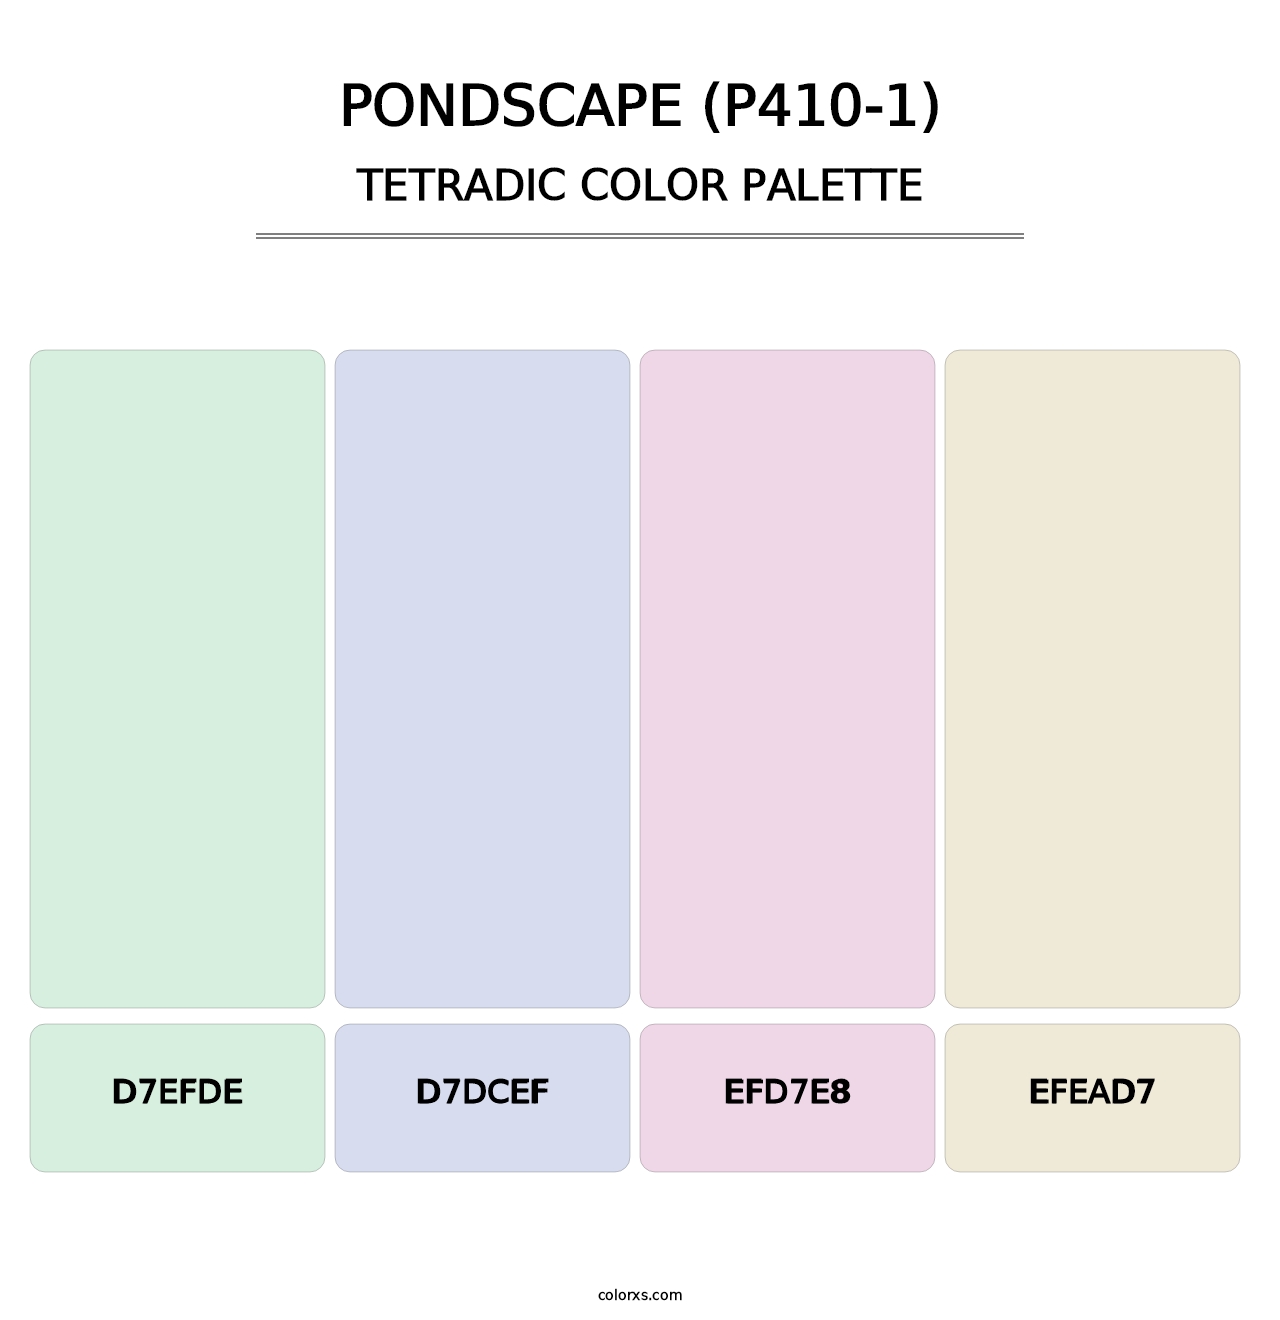 Pondscape (P410-1) - Tetradic Color Palette